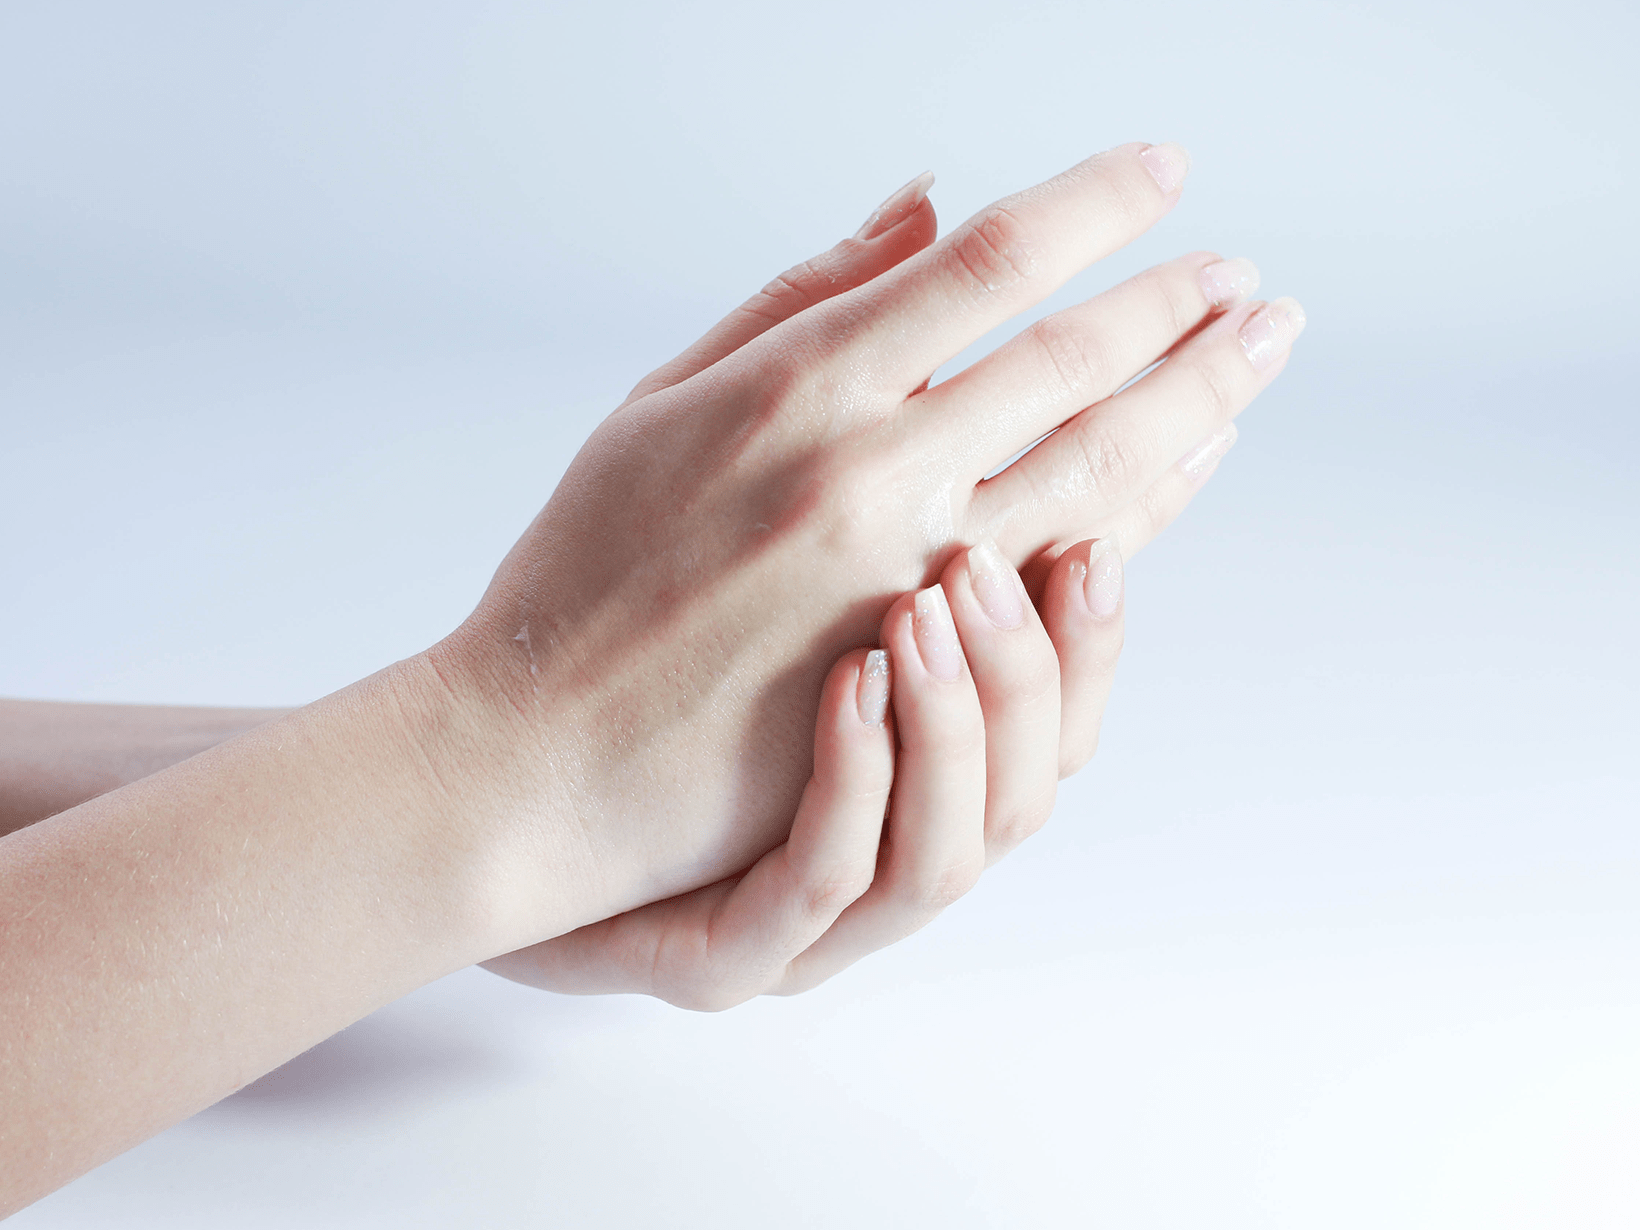 Step 1: riscaldate la crema tra le mani e massaggiate con delicatezza